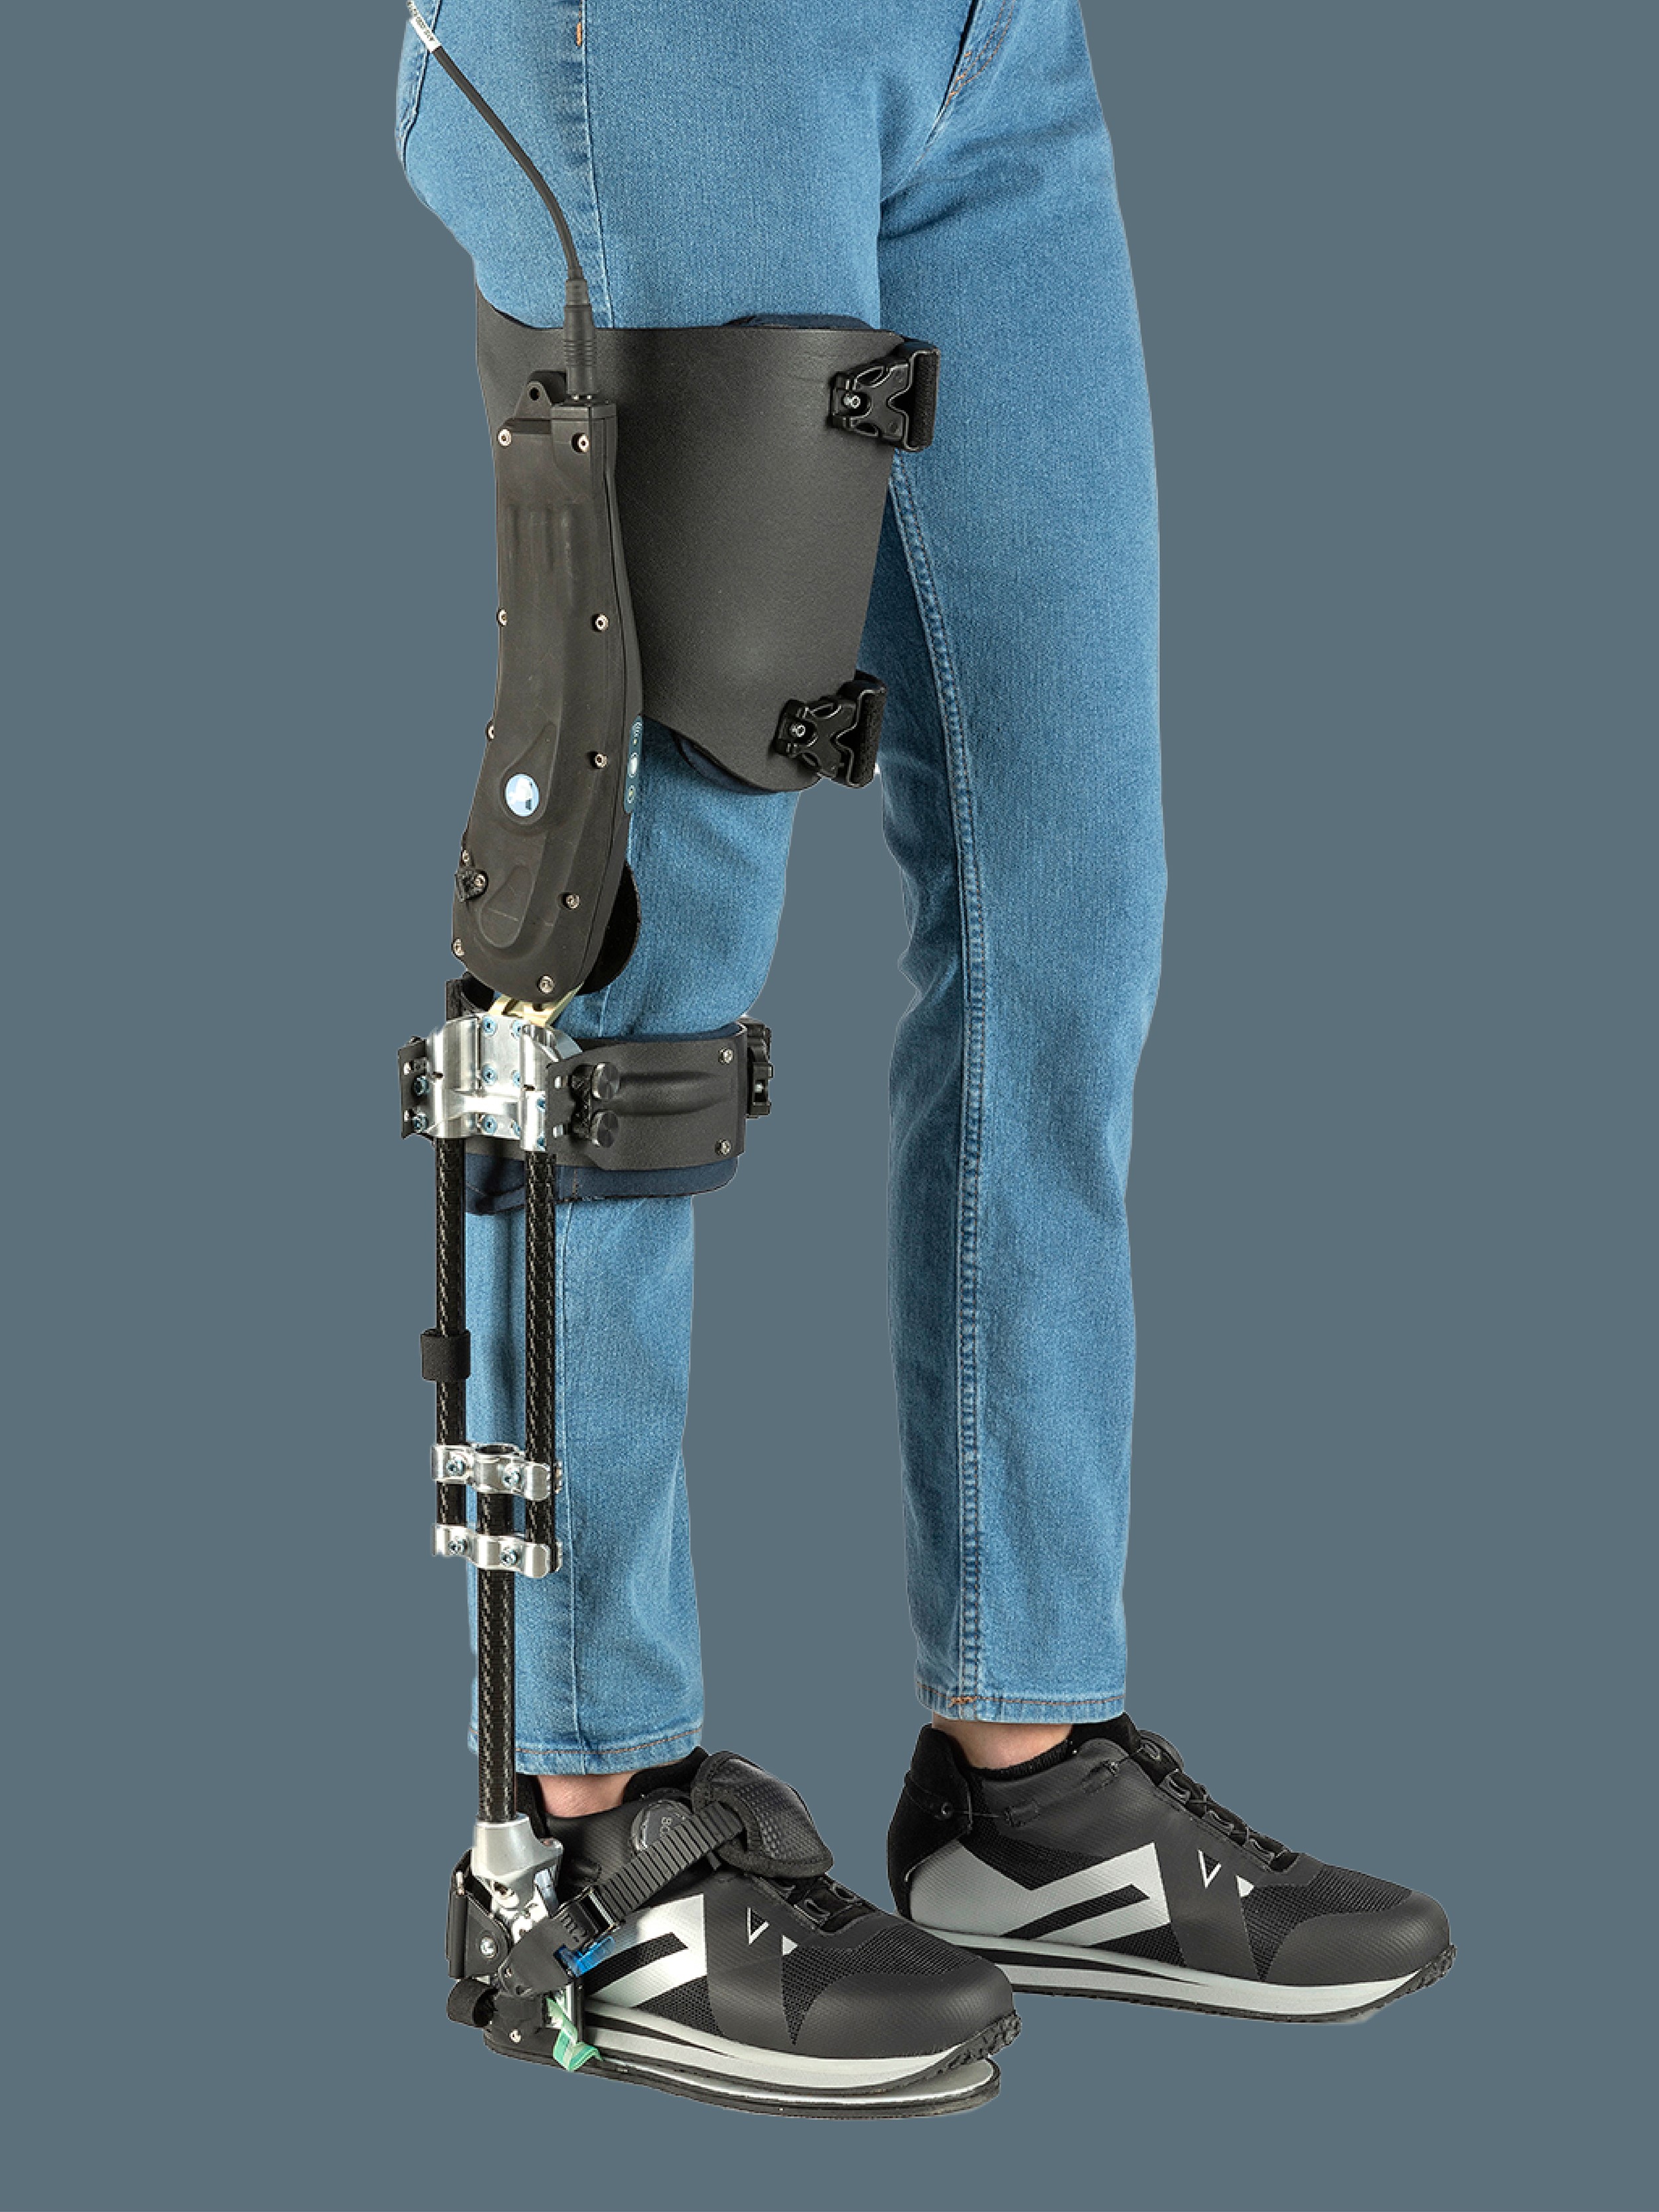 Agilik, l’ortesi robotica che aumenta la mobilità personale 